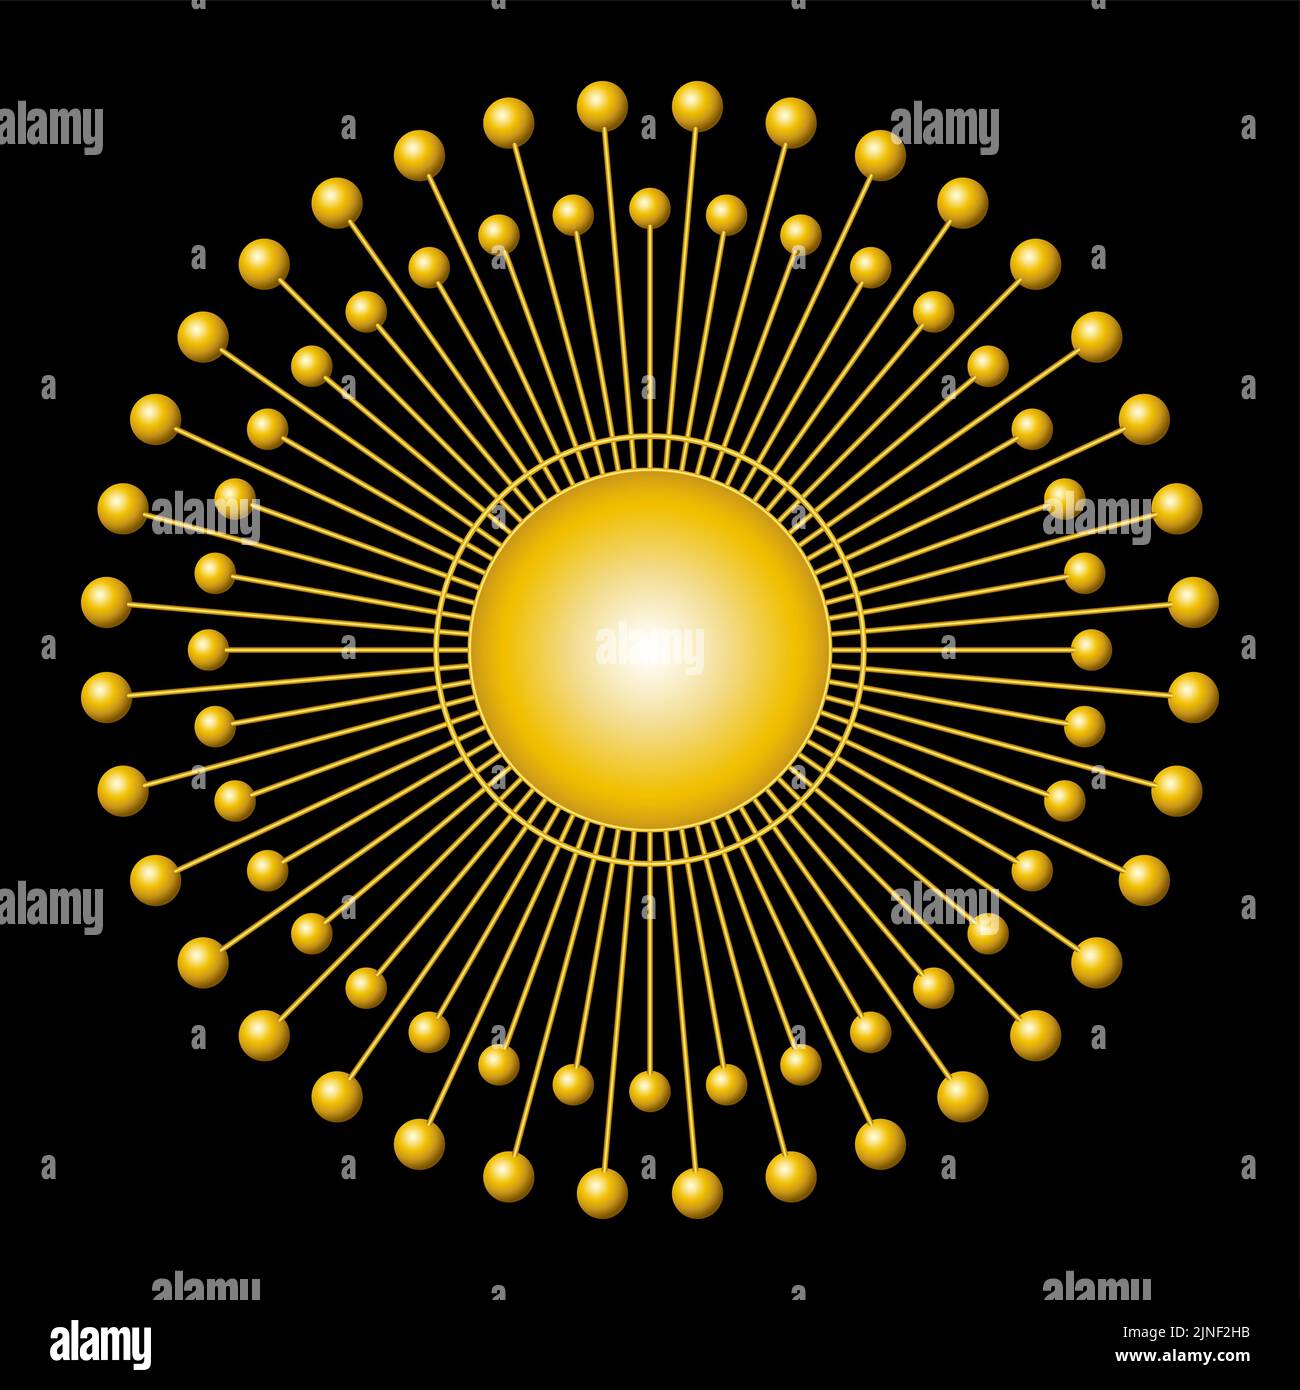 Símbolo de sol dorado. Disco solar con 72 rayos de luz, con esferas en cada extremo, alrededor de un círculo dorado en el centro. Foto de stock